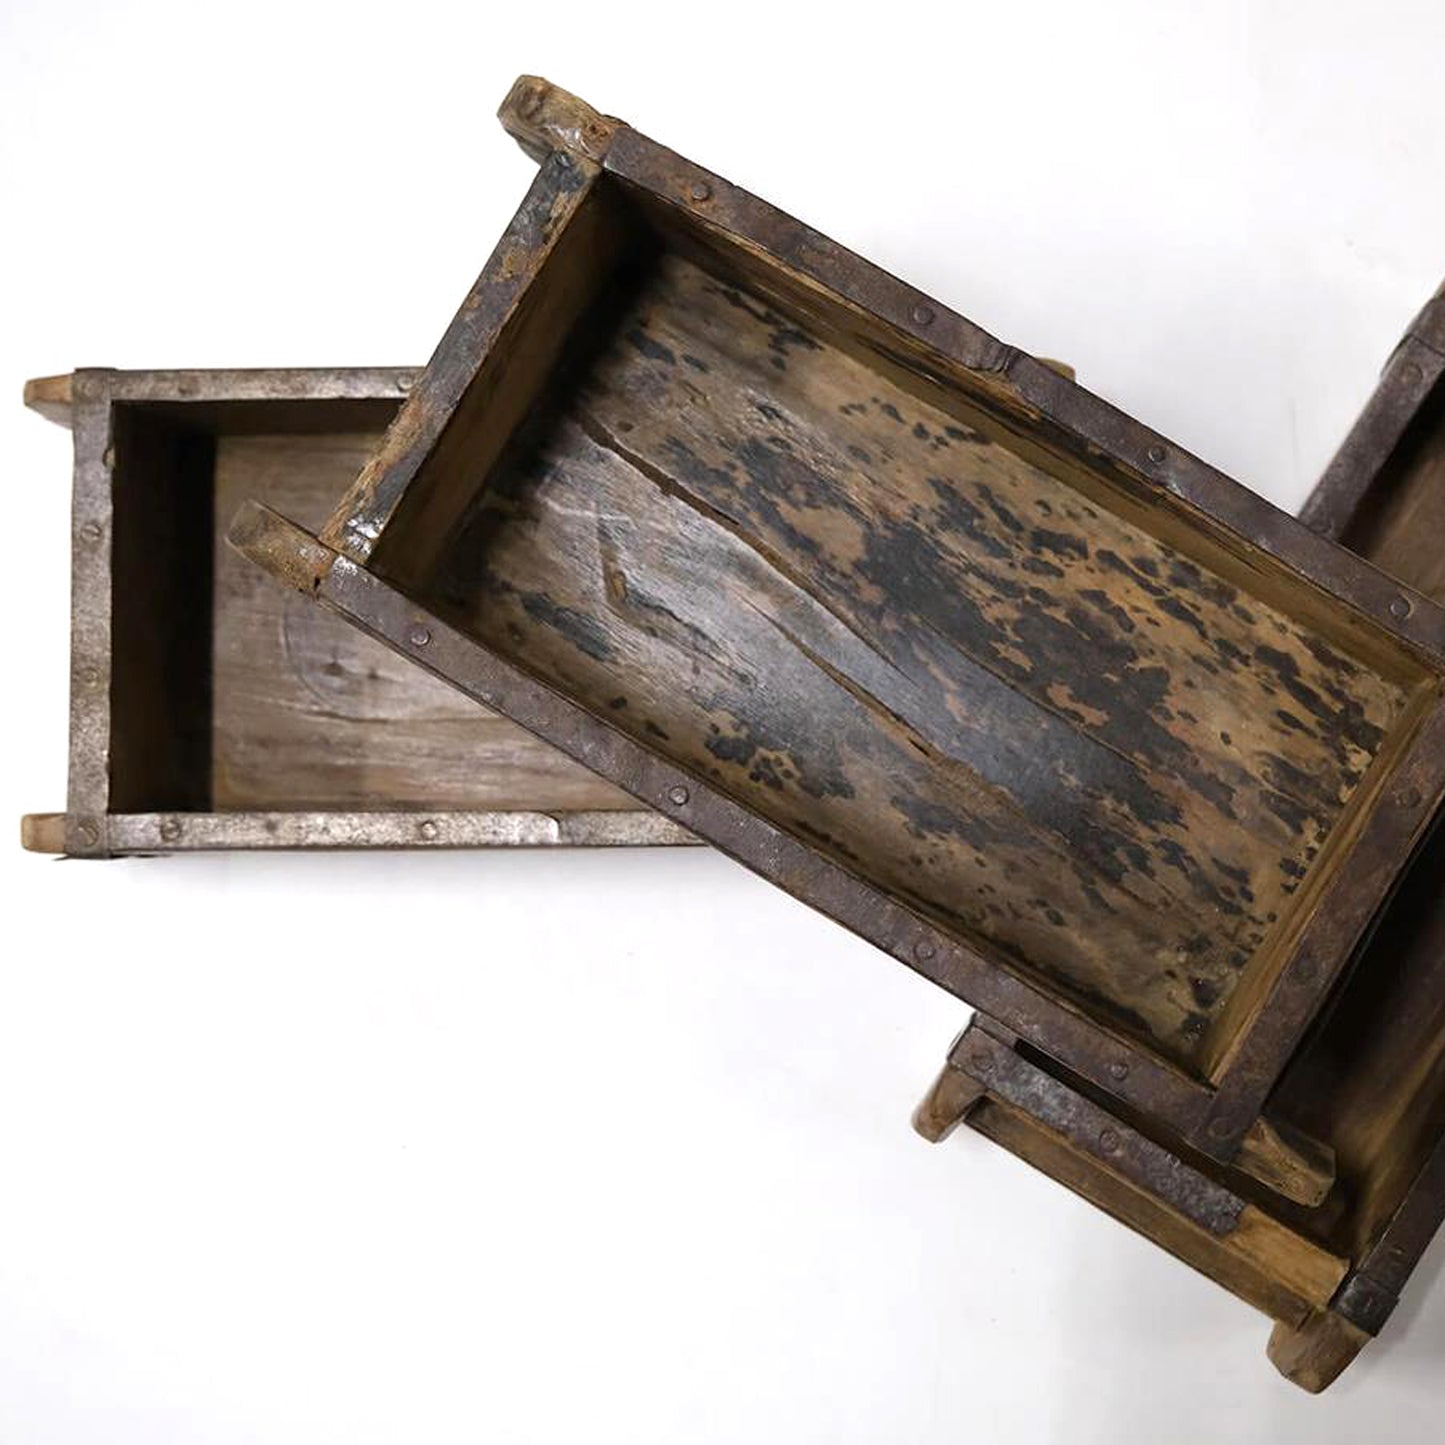 Holzschatulle, Holzkiste "Alte Ziegelform" - gewachst 30 cm mit Patina Vintagestyle